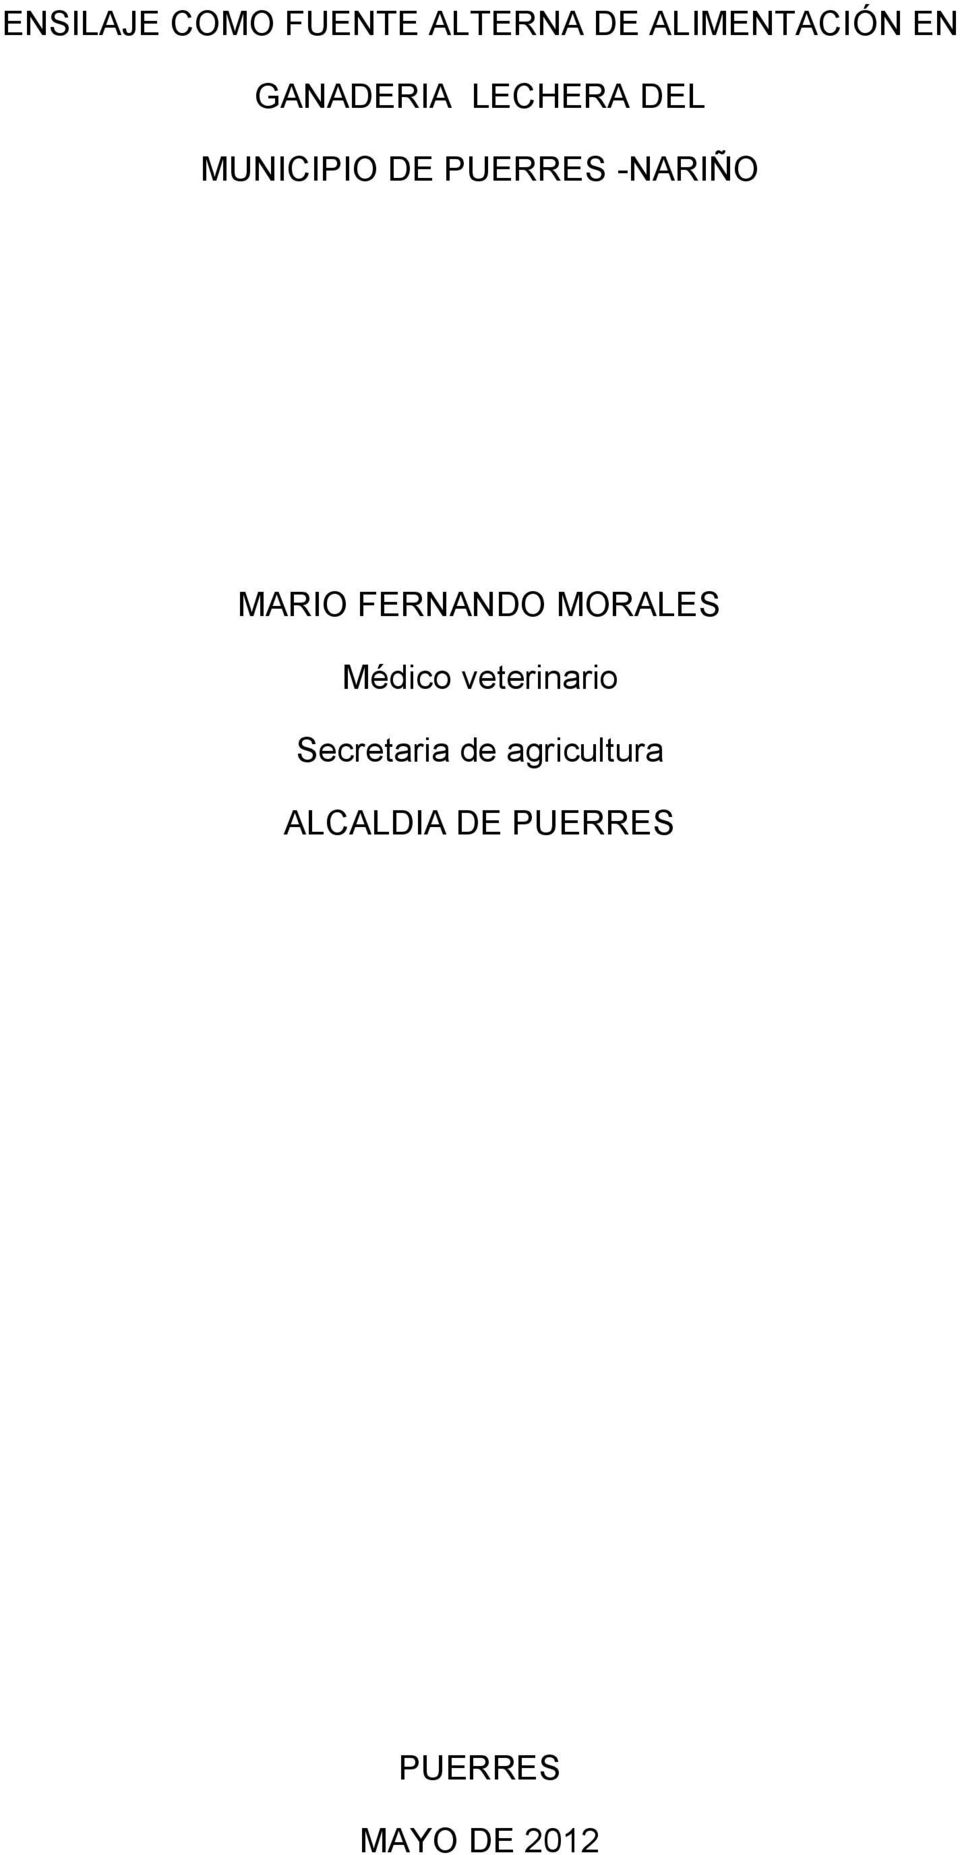 MARIO FERNANDO MORALES Médico veterinario